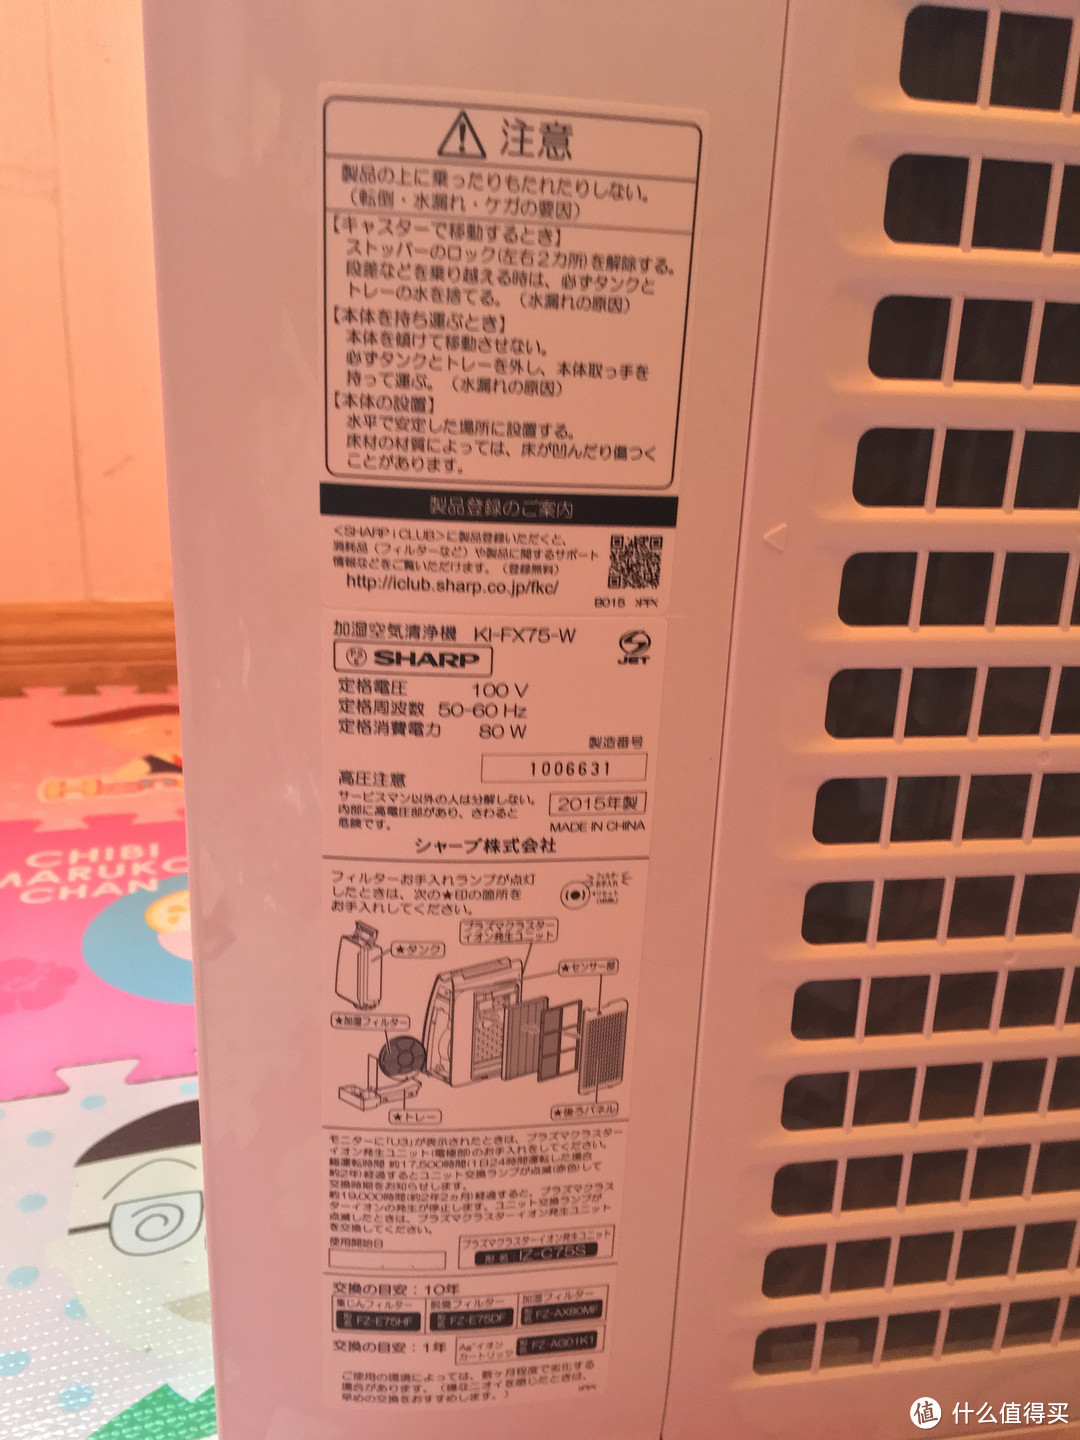 日亚购入SHARP 夏普 KI-FX75-W 空气净化器 纯开箱检视